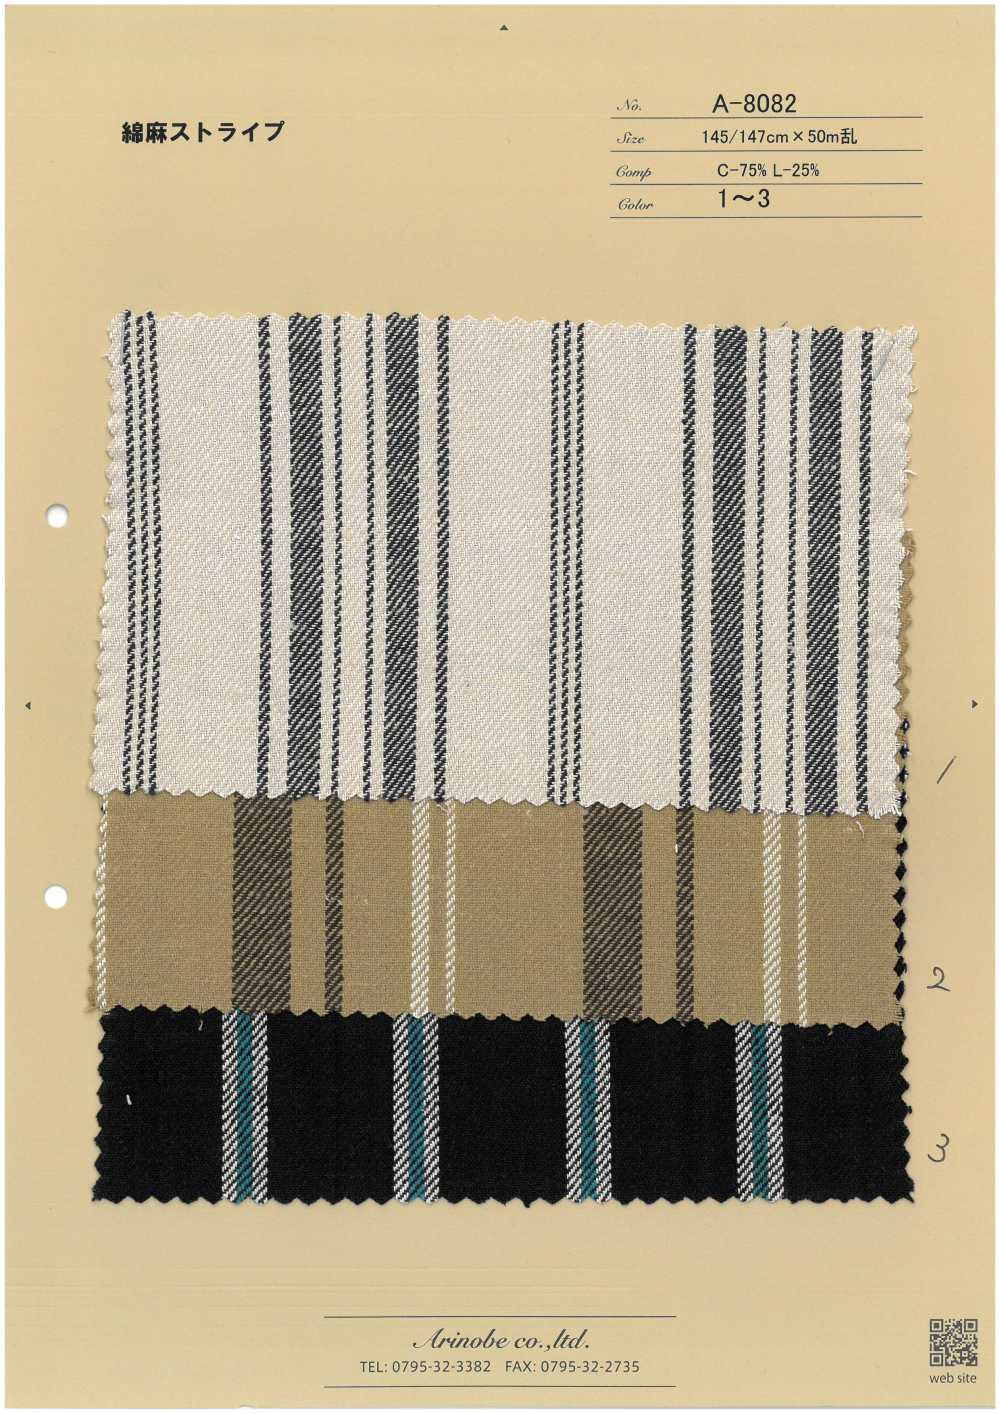 A-8082 Leinenstreifen[Textilgewebe] ARINOBE CO., LTD.